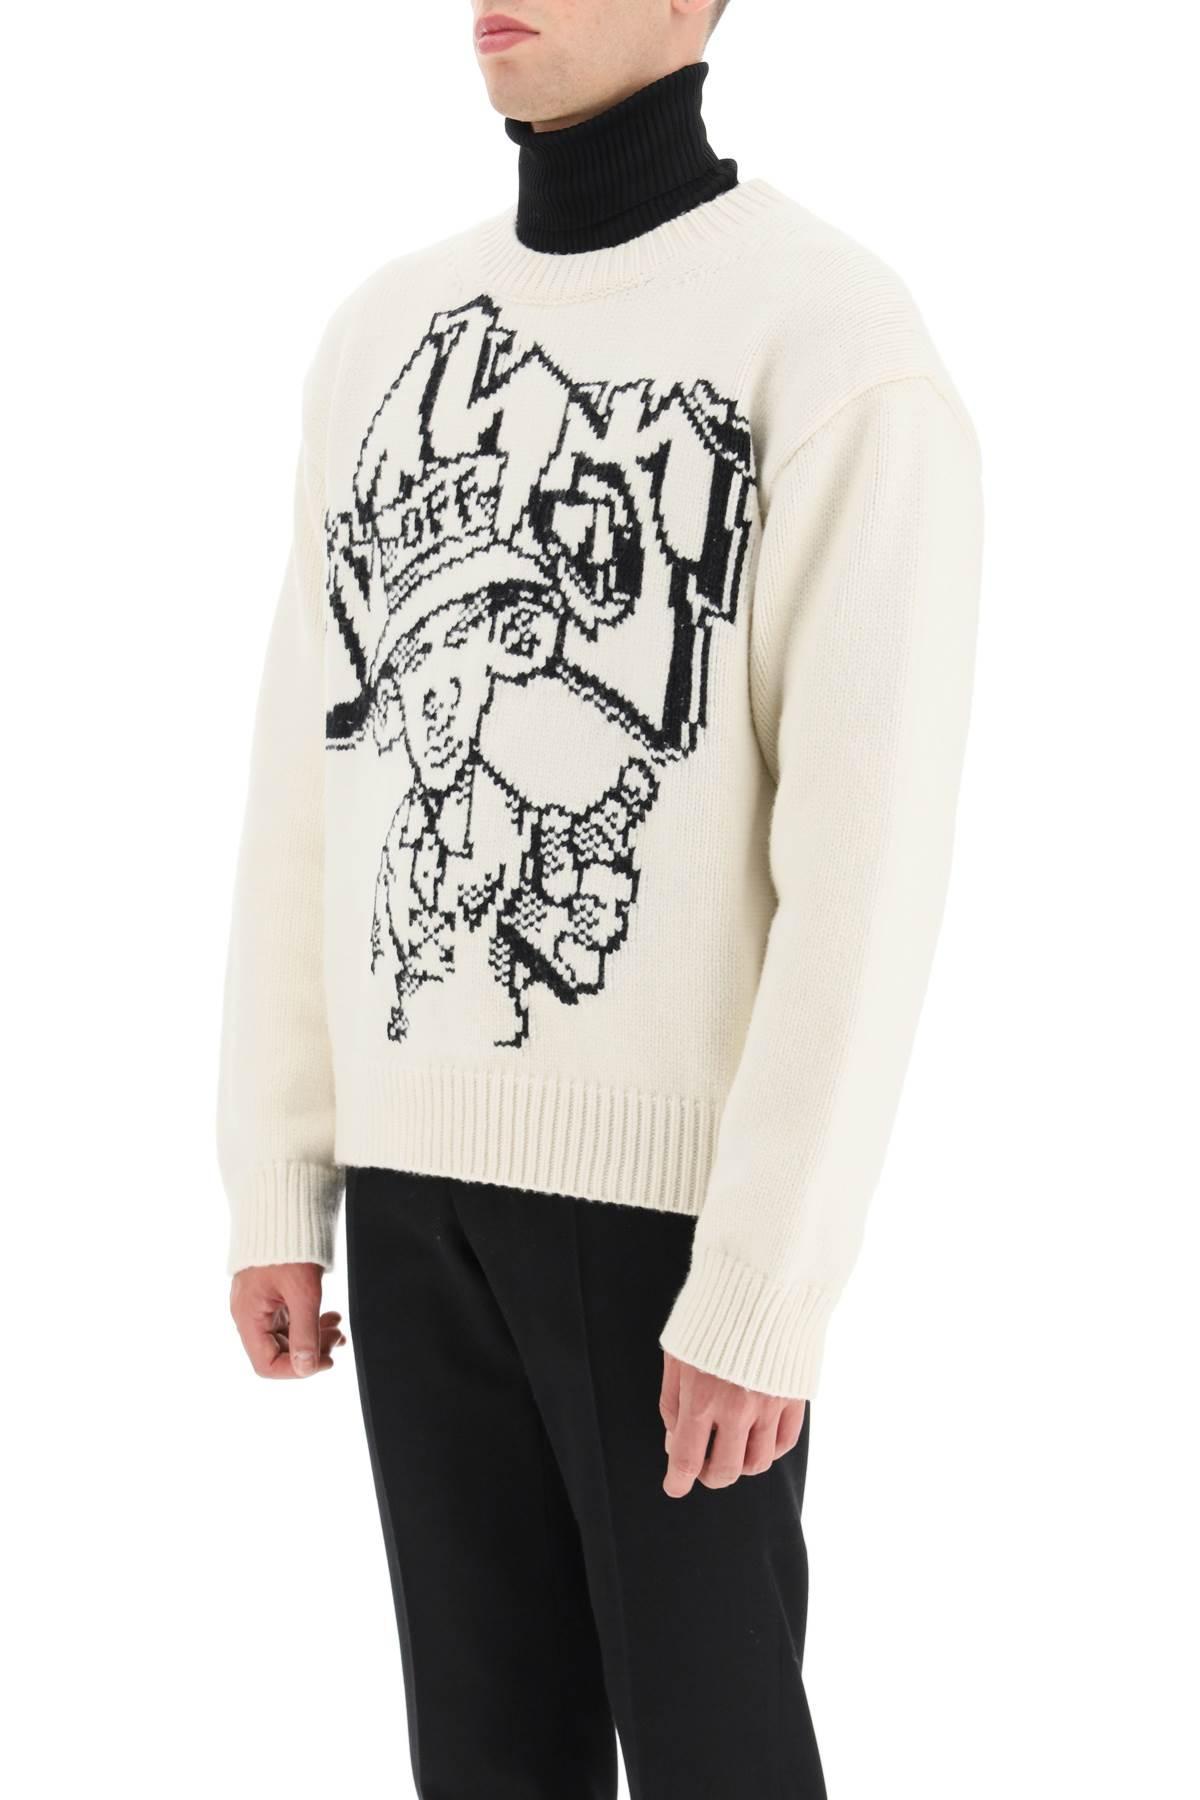 Off-White c/o Virgil Abloh Graffiti 'freest' Sweater in White for Men | Lyst